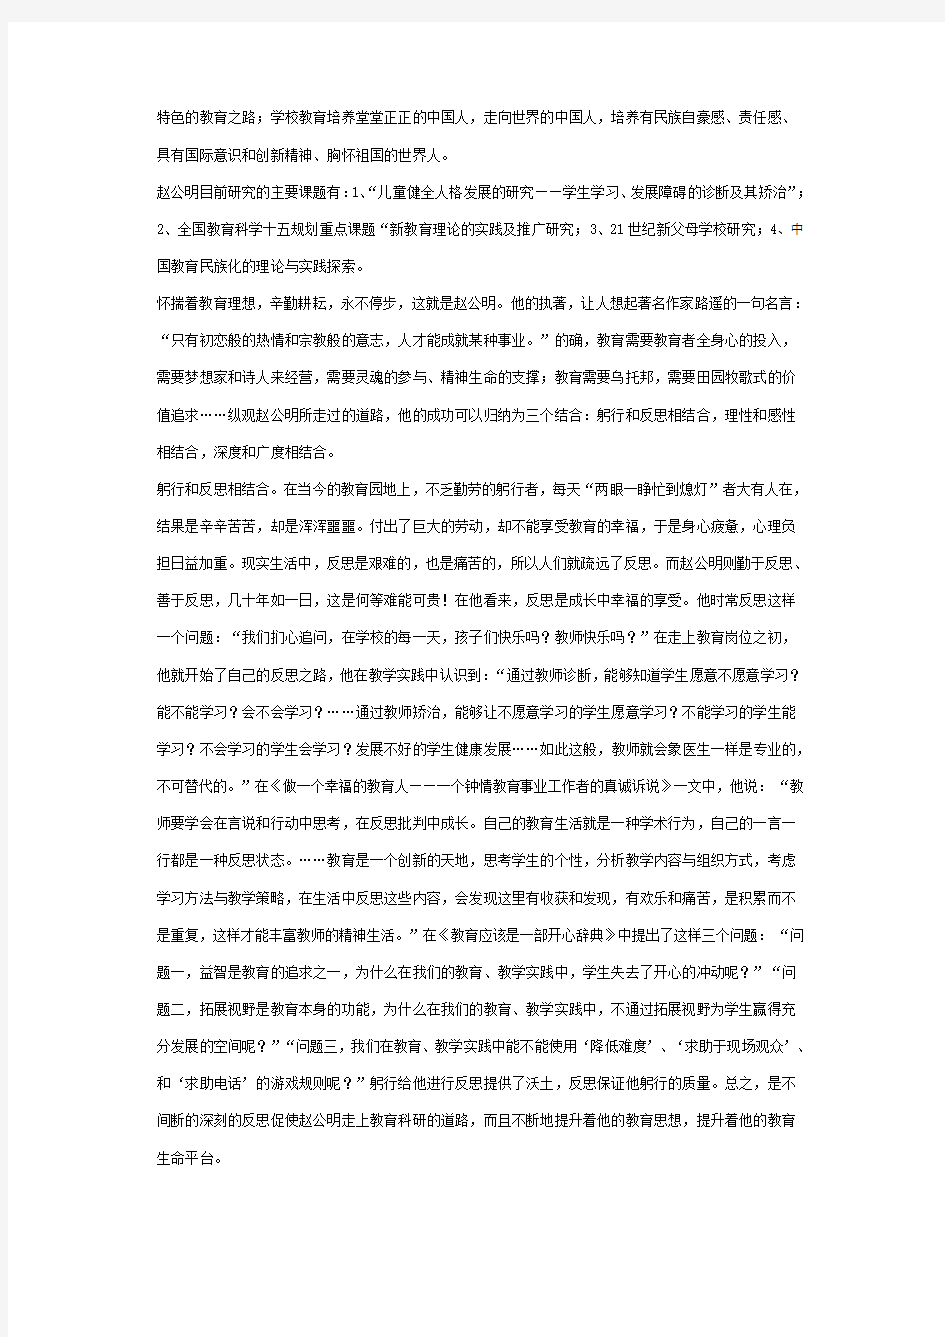 江苏省中学数学特级教师赵公明